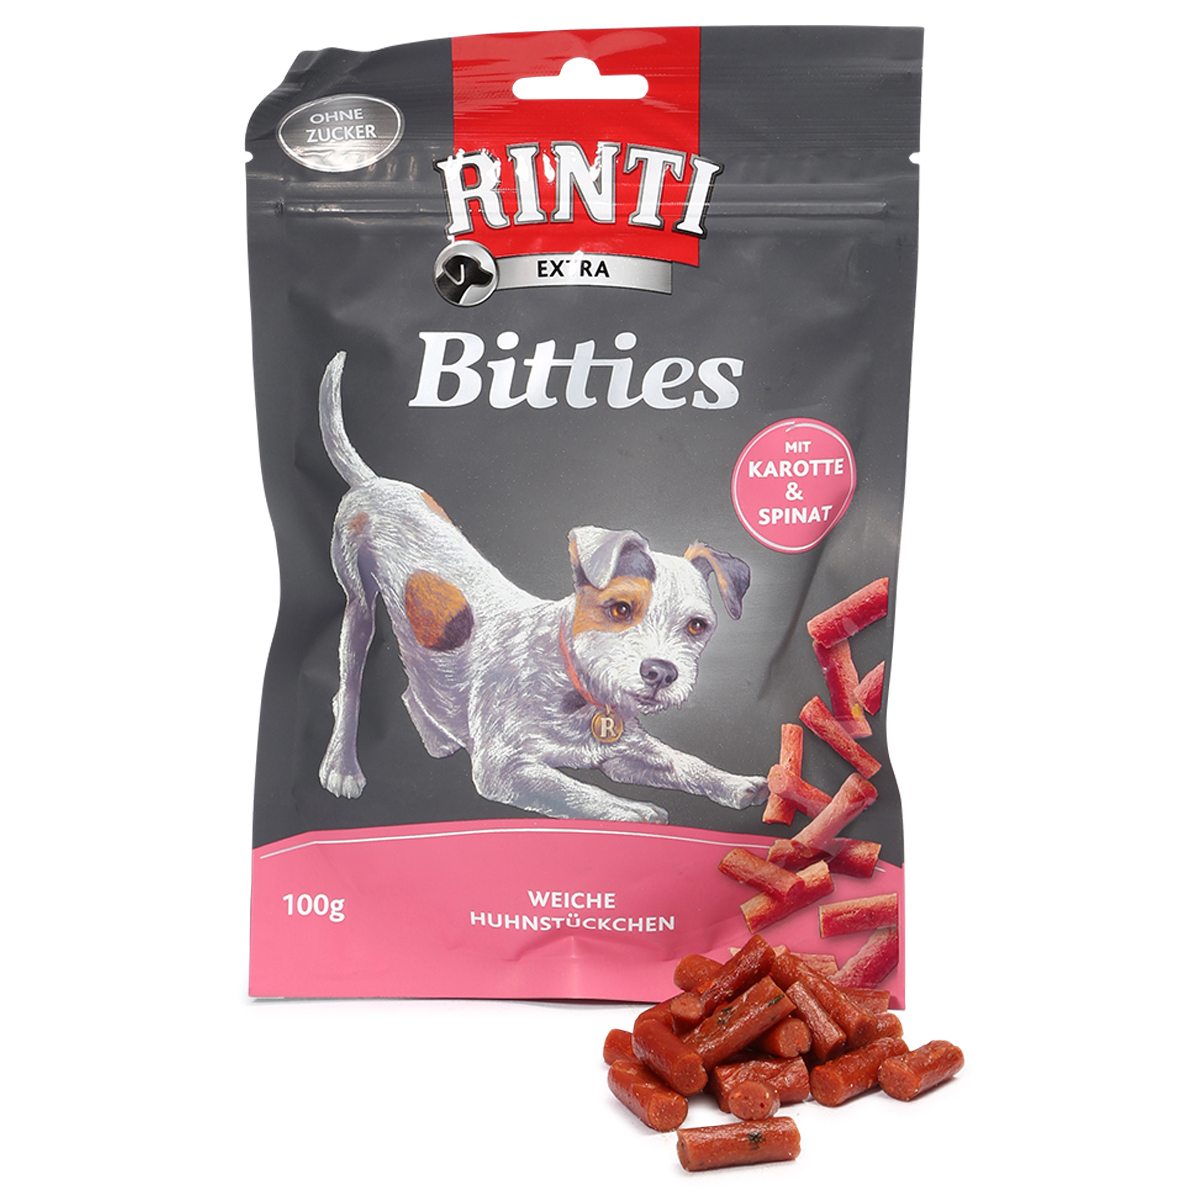 Rinti Extra Bitties mit Karotten und Spinat 100g